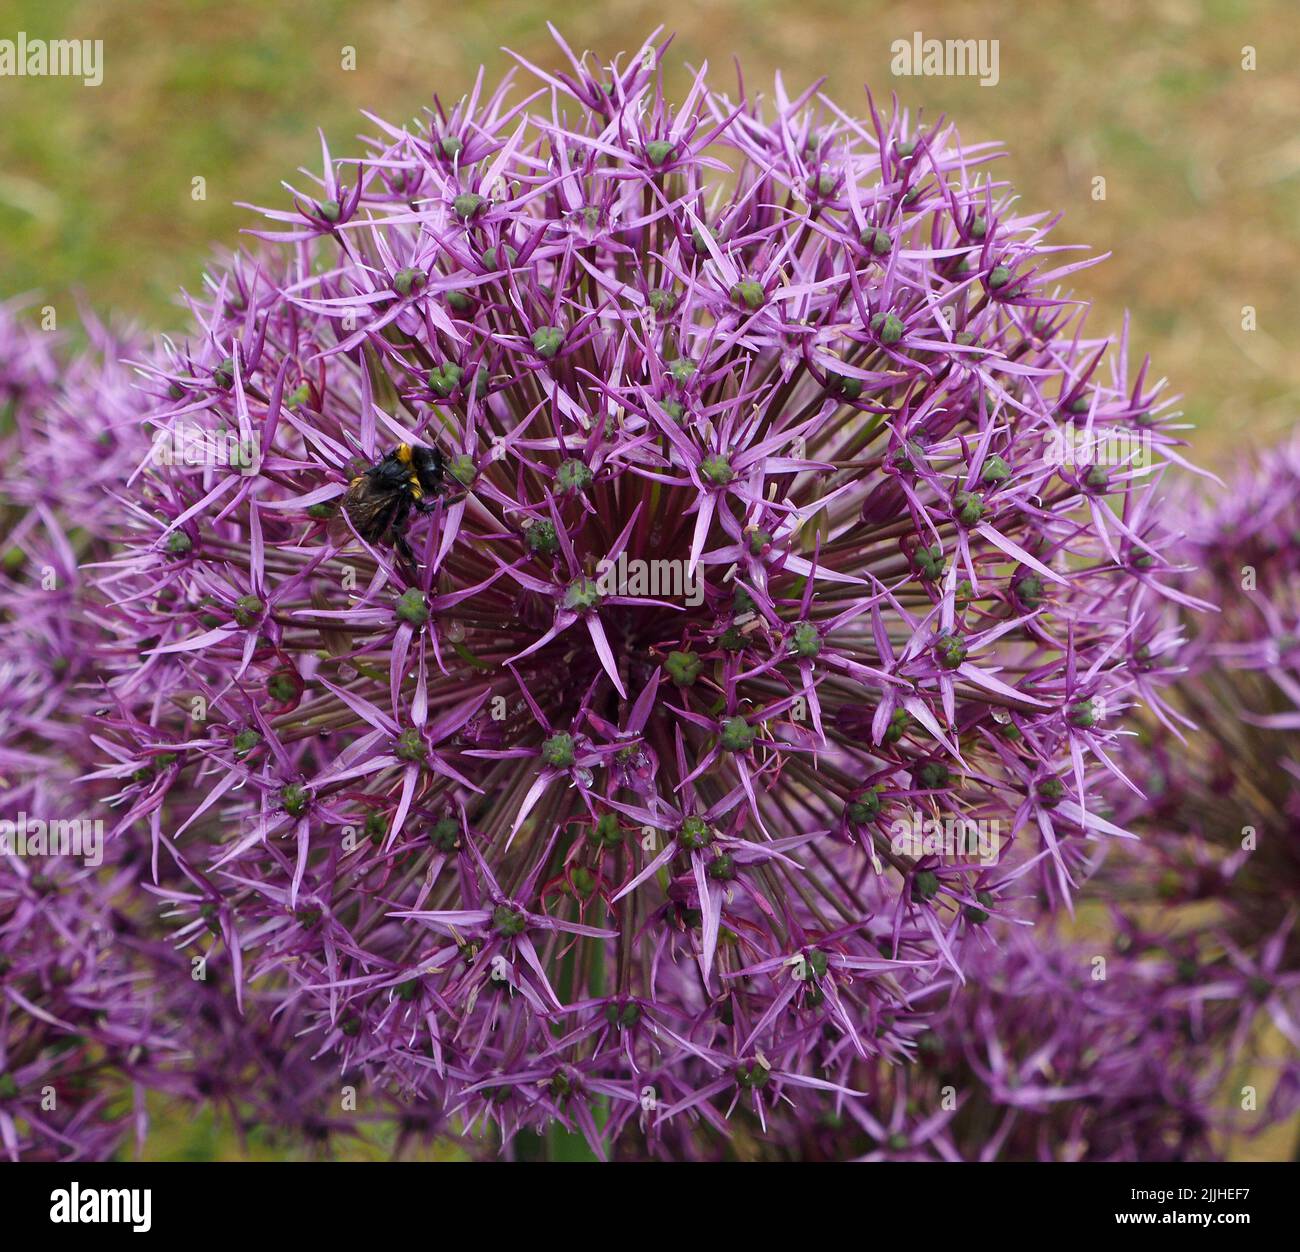 Gros plan macro d'une inflorescence unique d'Allium Round 'n Purple montrant les différents flowerlets avec un nectar d'abeille collectrice. Banque D'Images